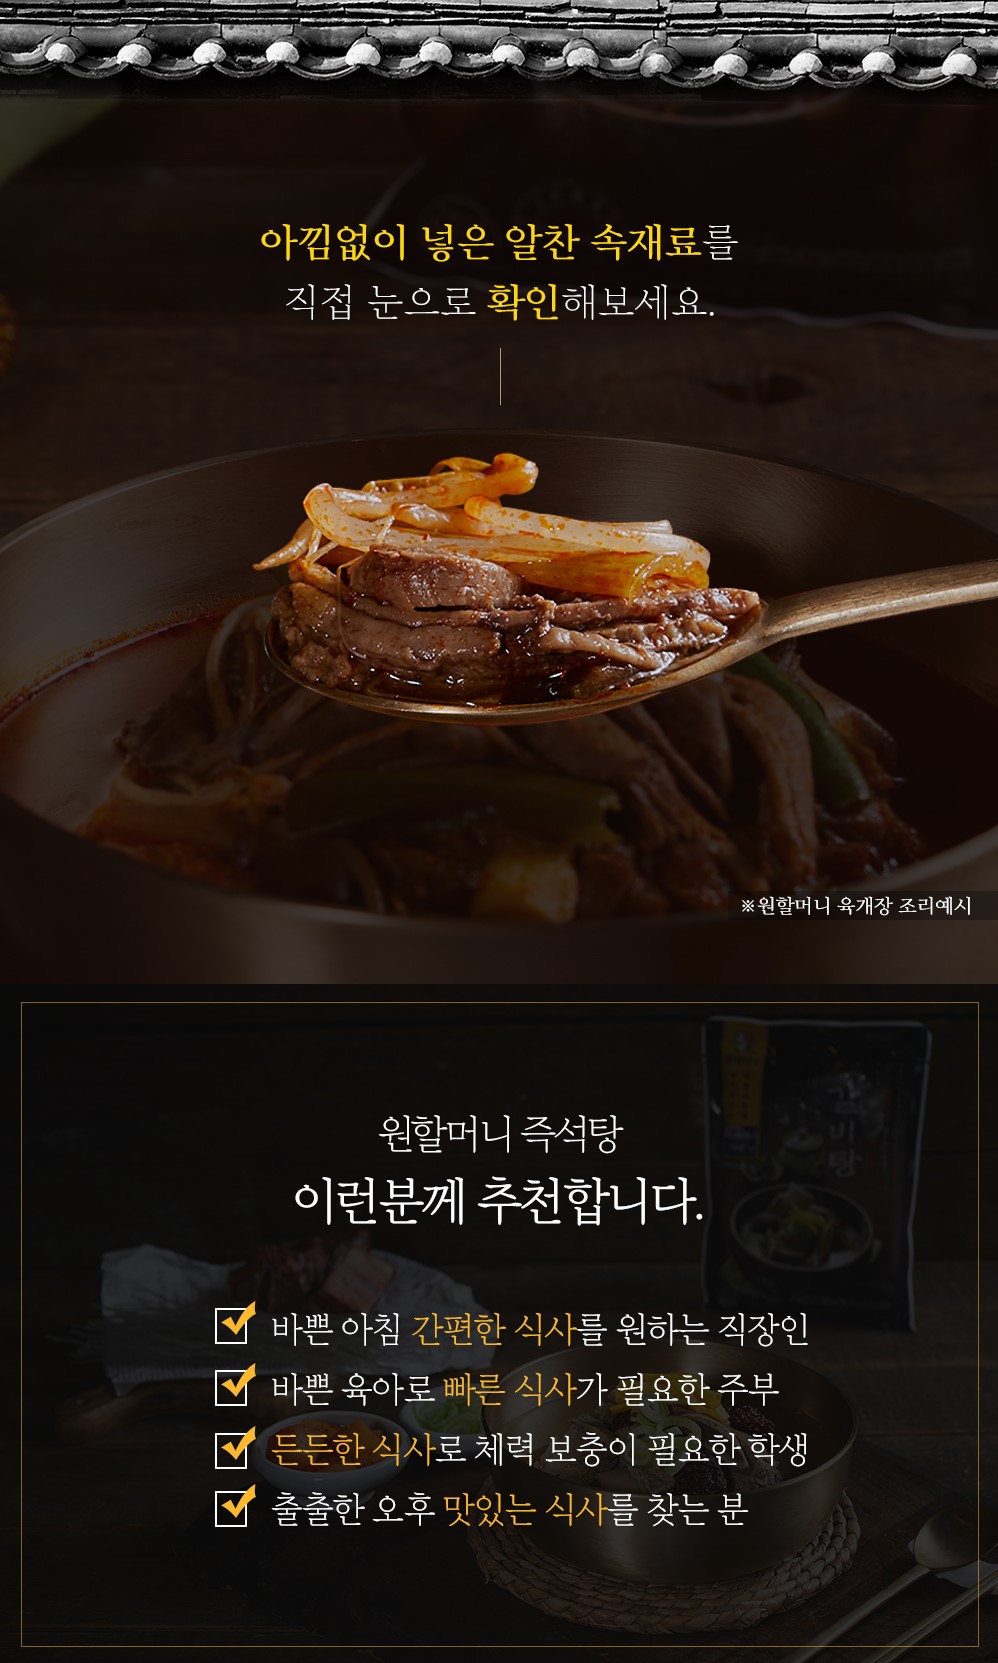 韓國食品-[원앤원] 원할머니명품우거지추어탕 510g